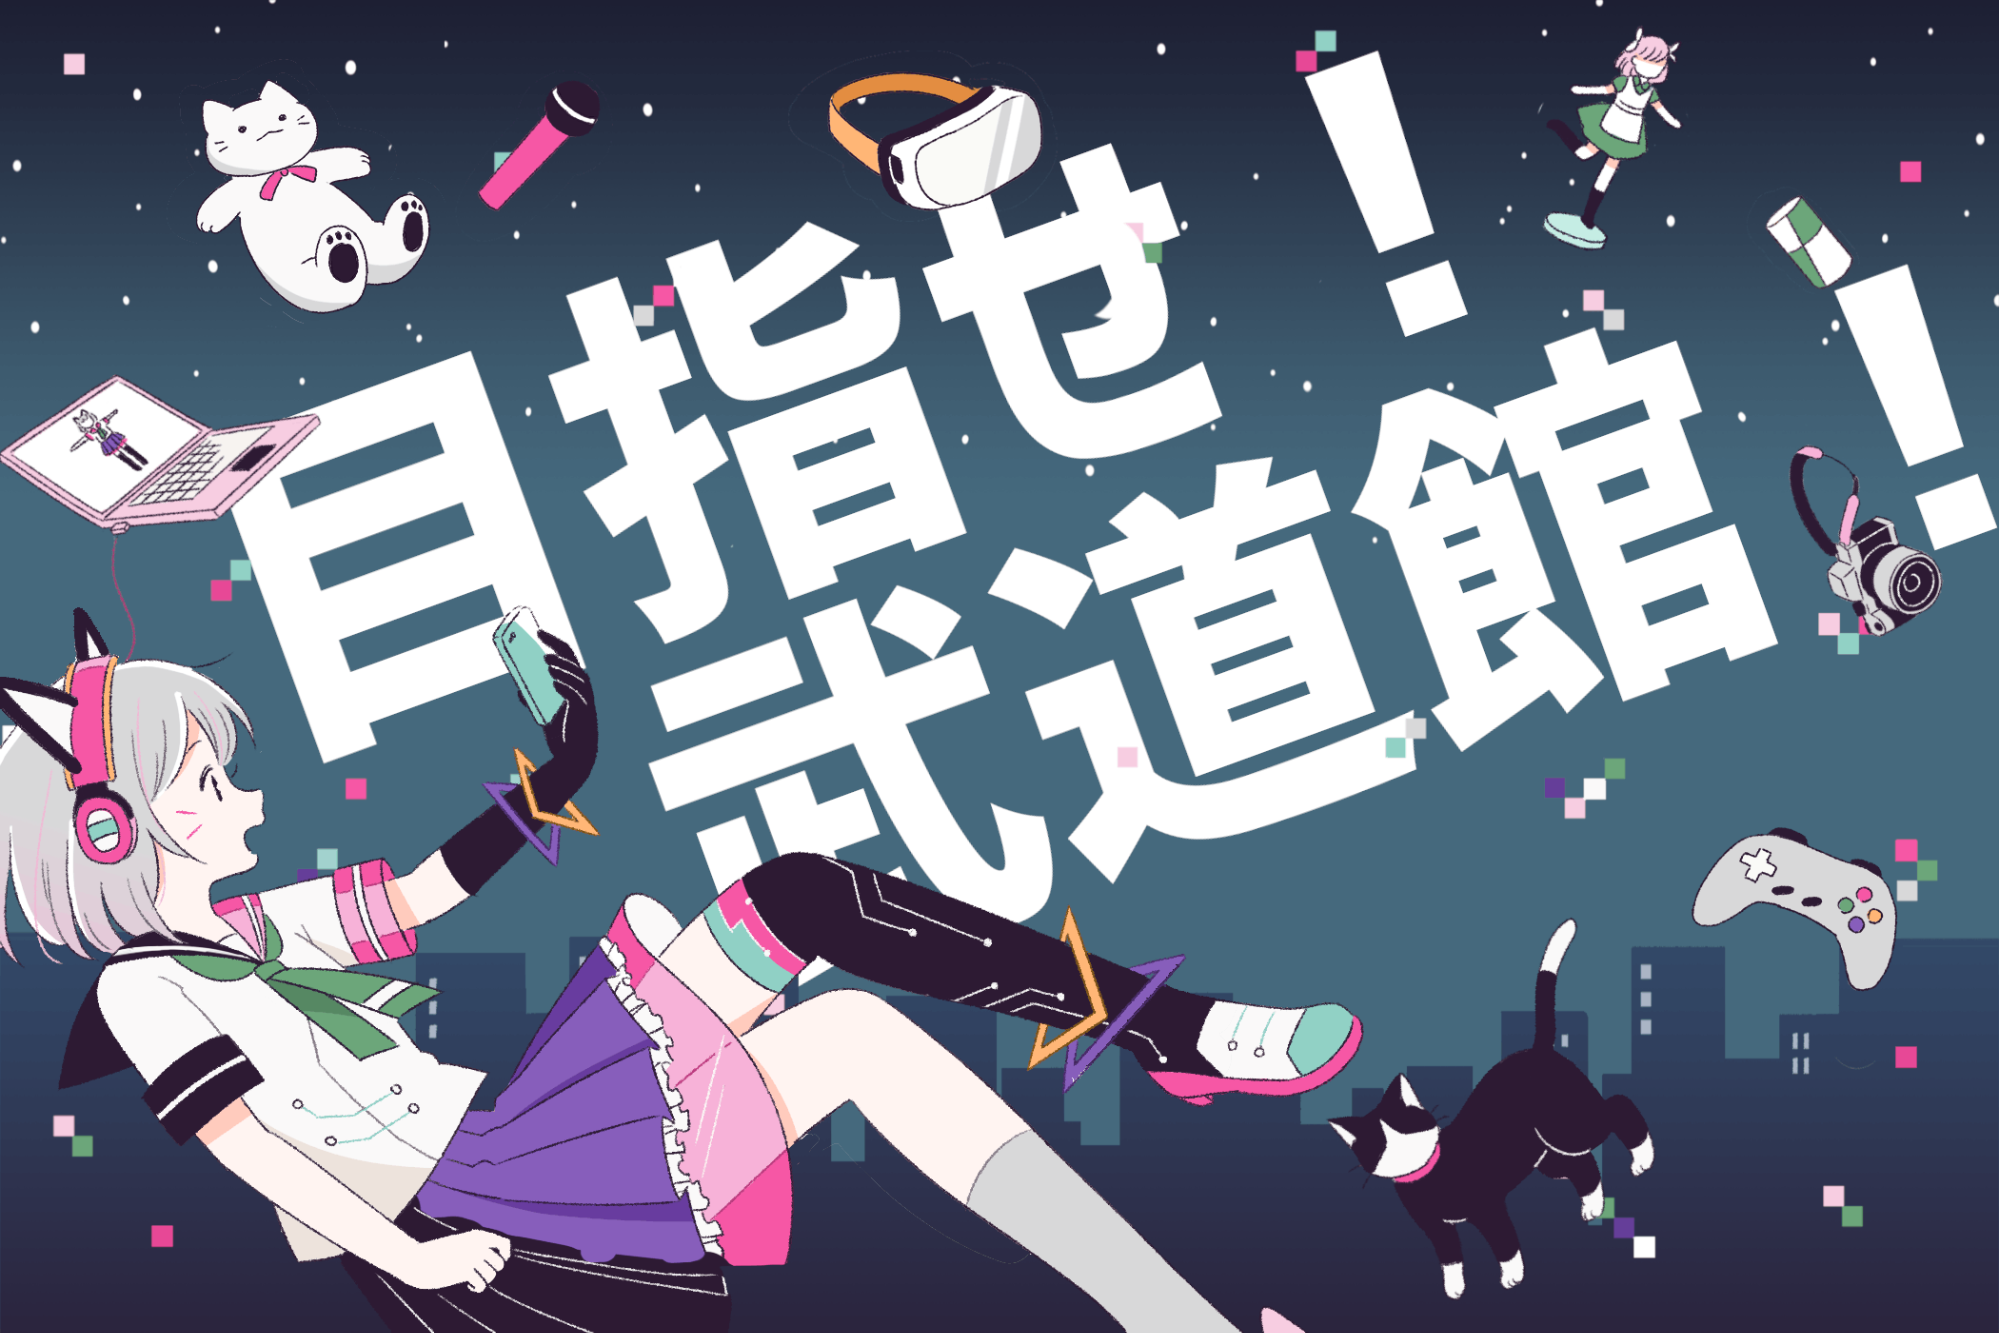 春休み！こどもに人気のアニメが大集合！
AnimeJapan併催のファミリー向けイベント
『ファミリーアニメフェスタ2019』
入場無料！プレイコーナーやワークショップもすべて無料！